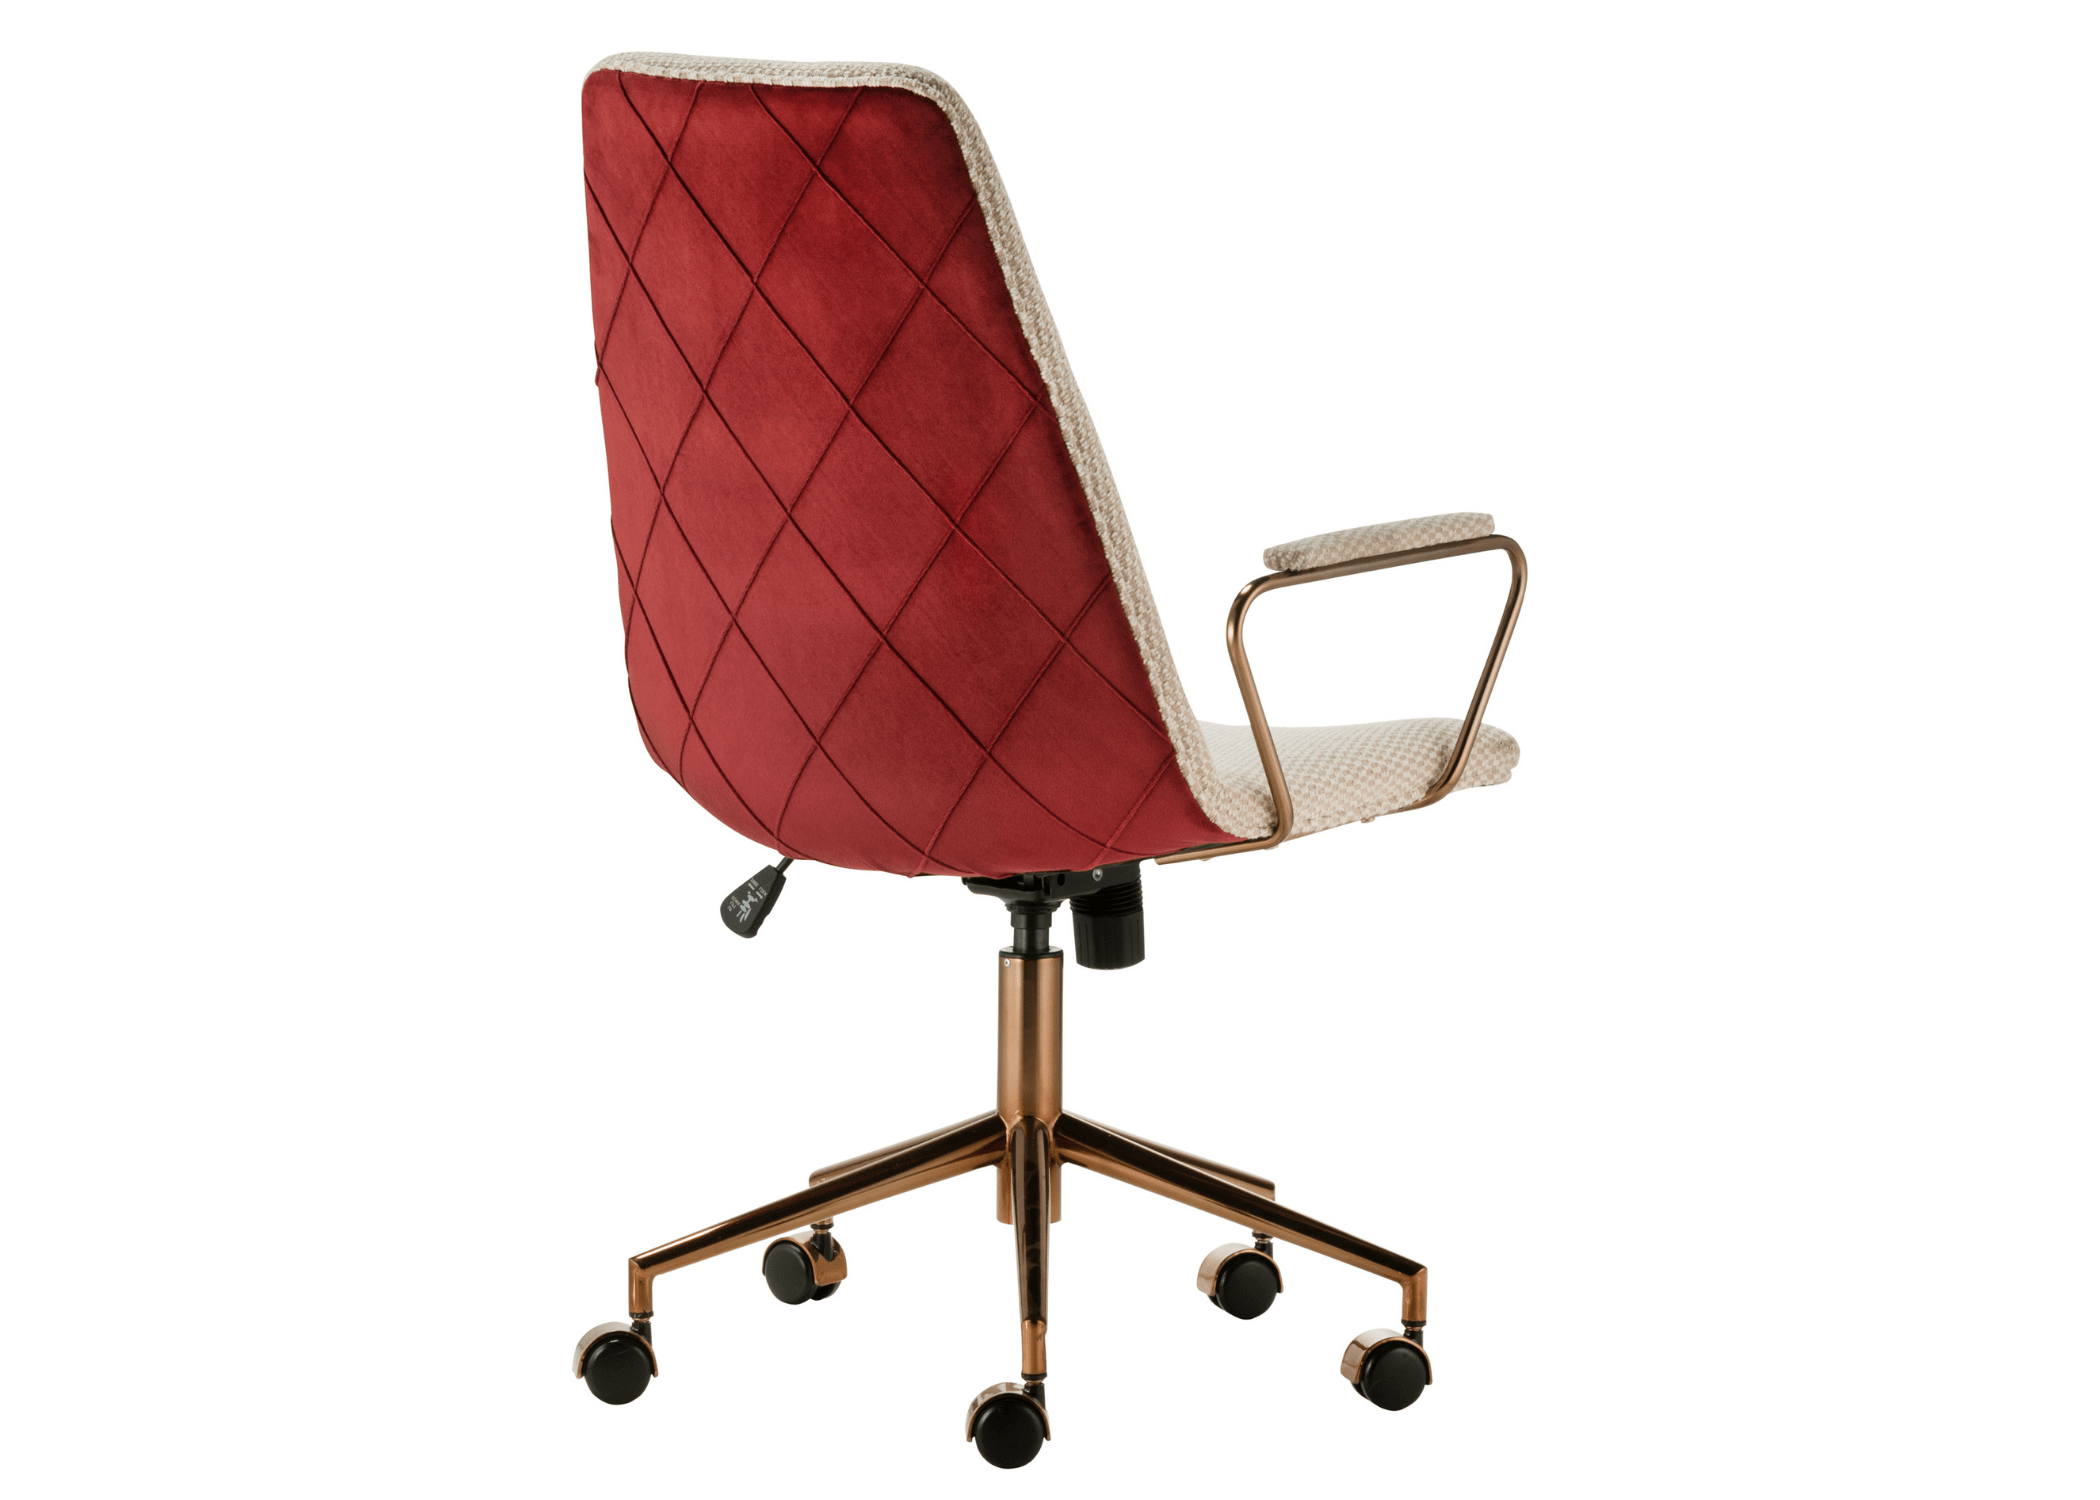 Design sofisticado da cadeira de escritório Wendy Alta, perfeita para adicionar estilo ao ambiente de trabalho.